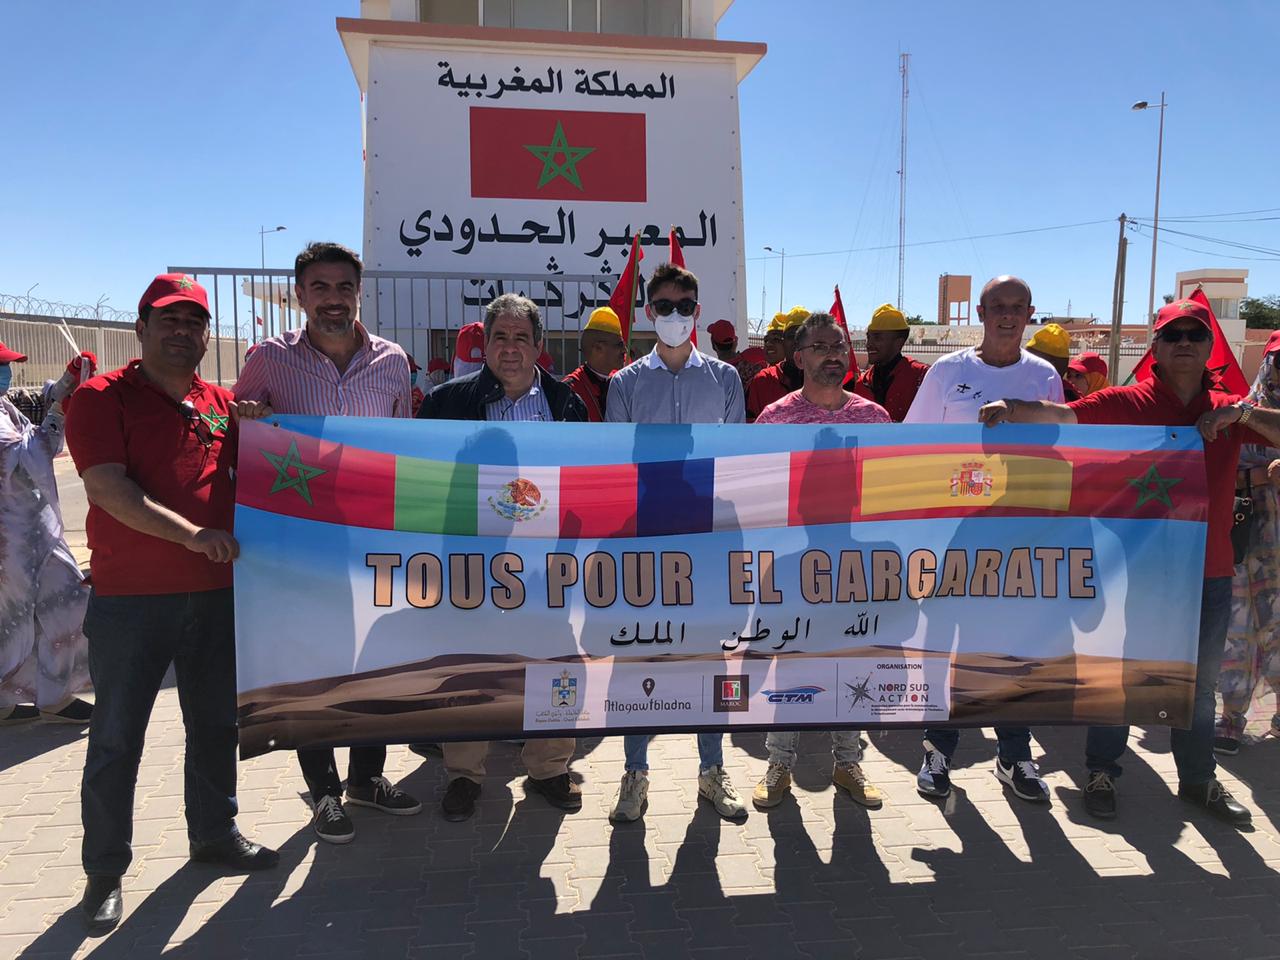  Promociona la asociación marroquí Nord Sud Action el potencial turístico de Marruecos